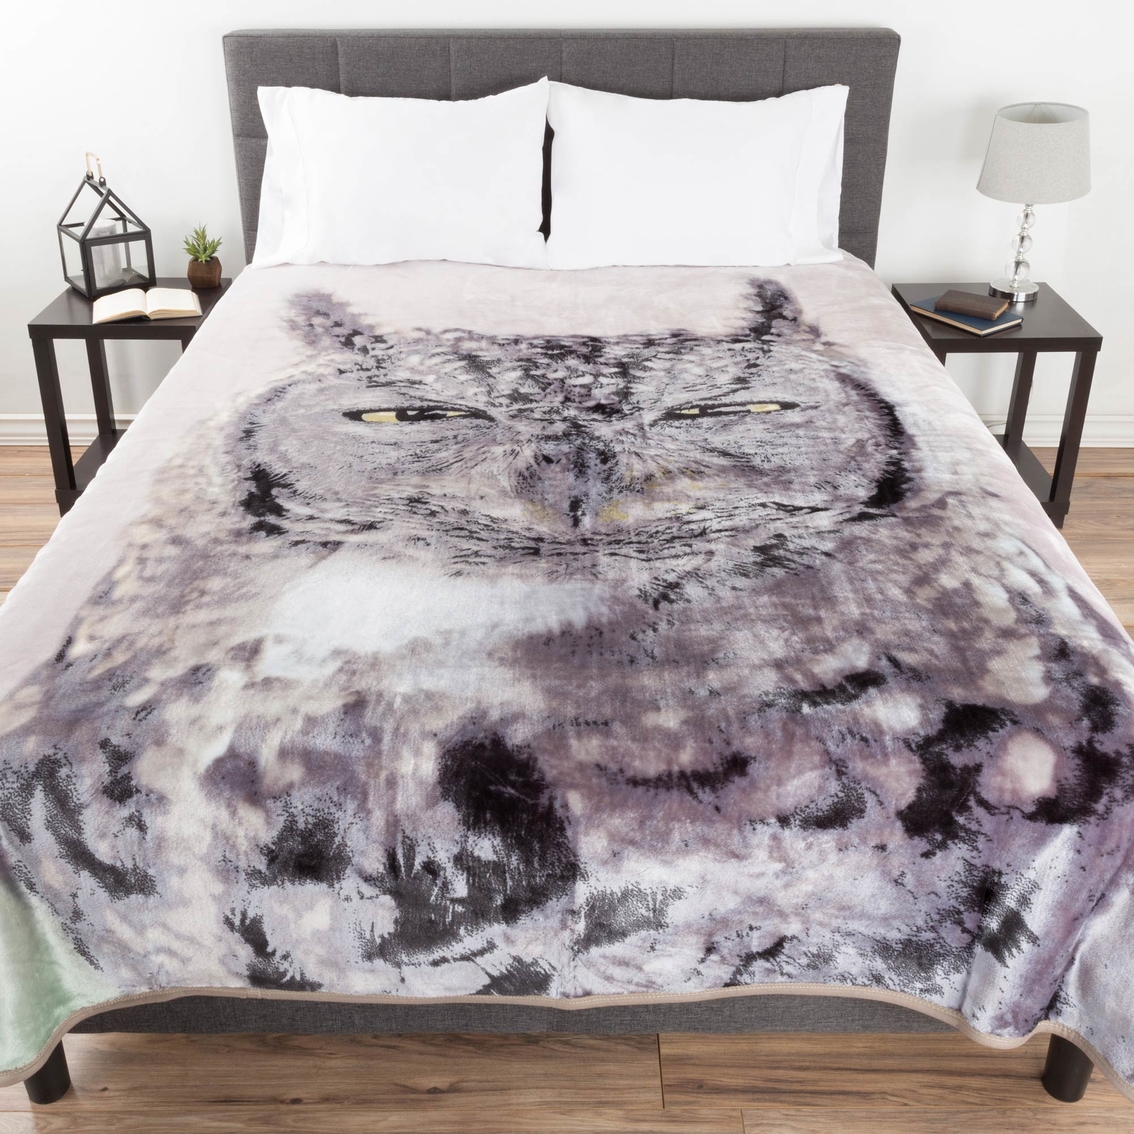 Lavish Home Heavy Fleece Woven Blanket - Image 2 of 4